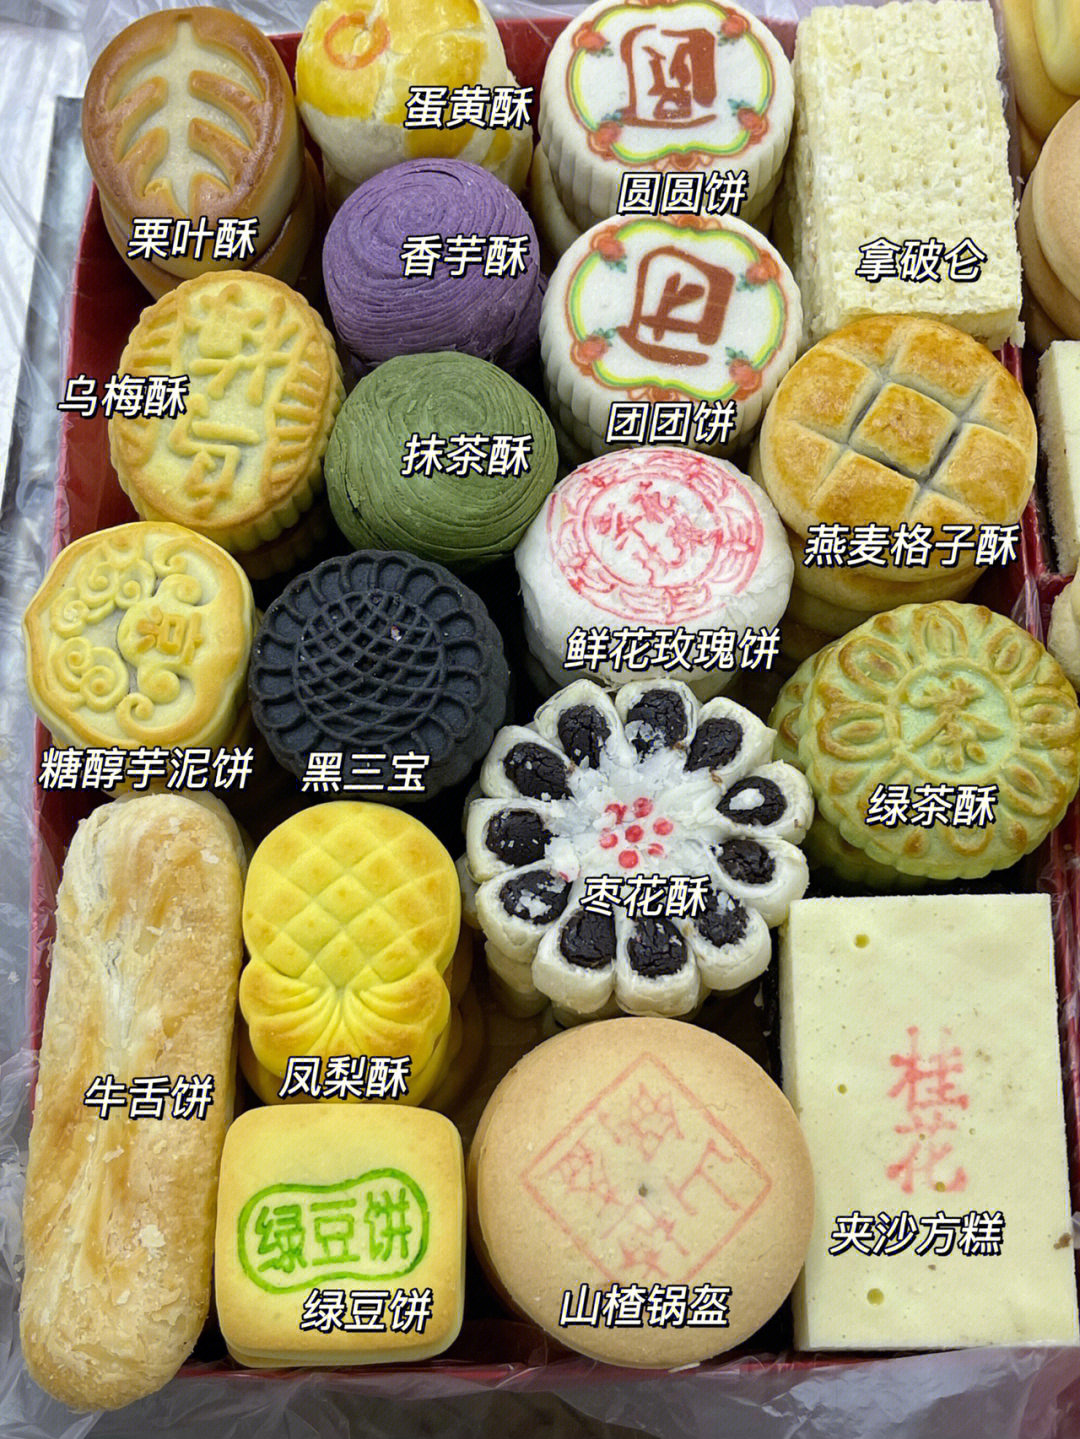 盛京甜品坊(美食)图片